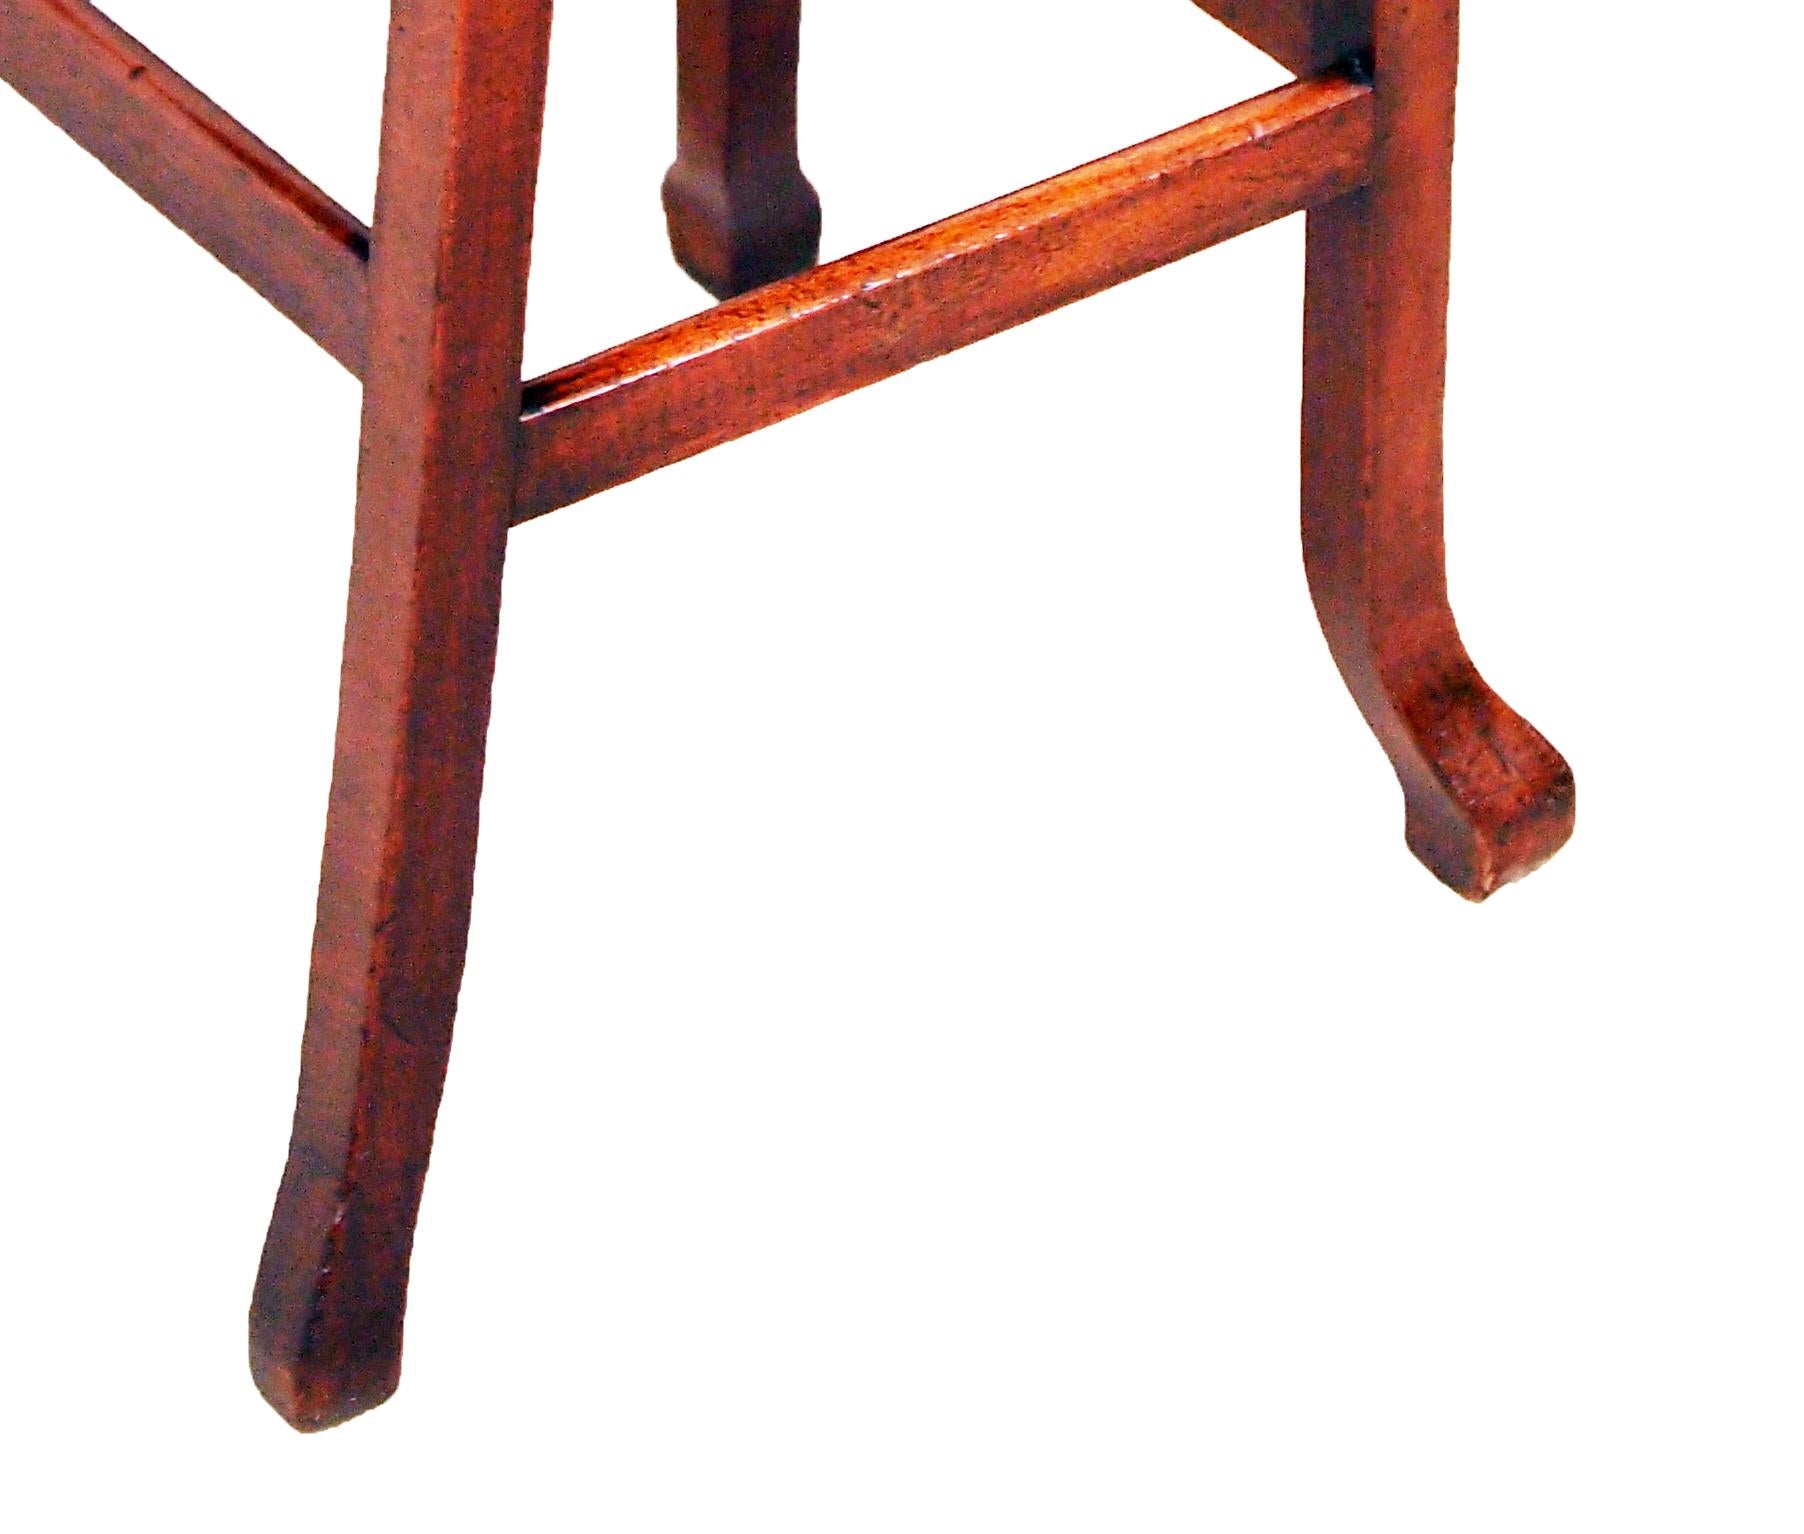 antique high chair